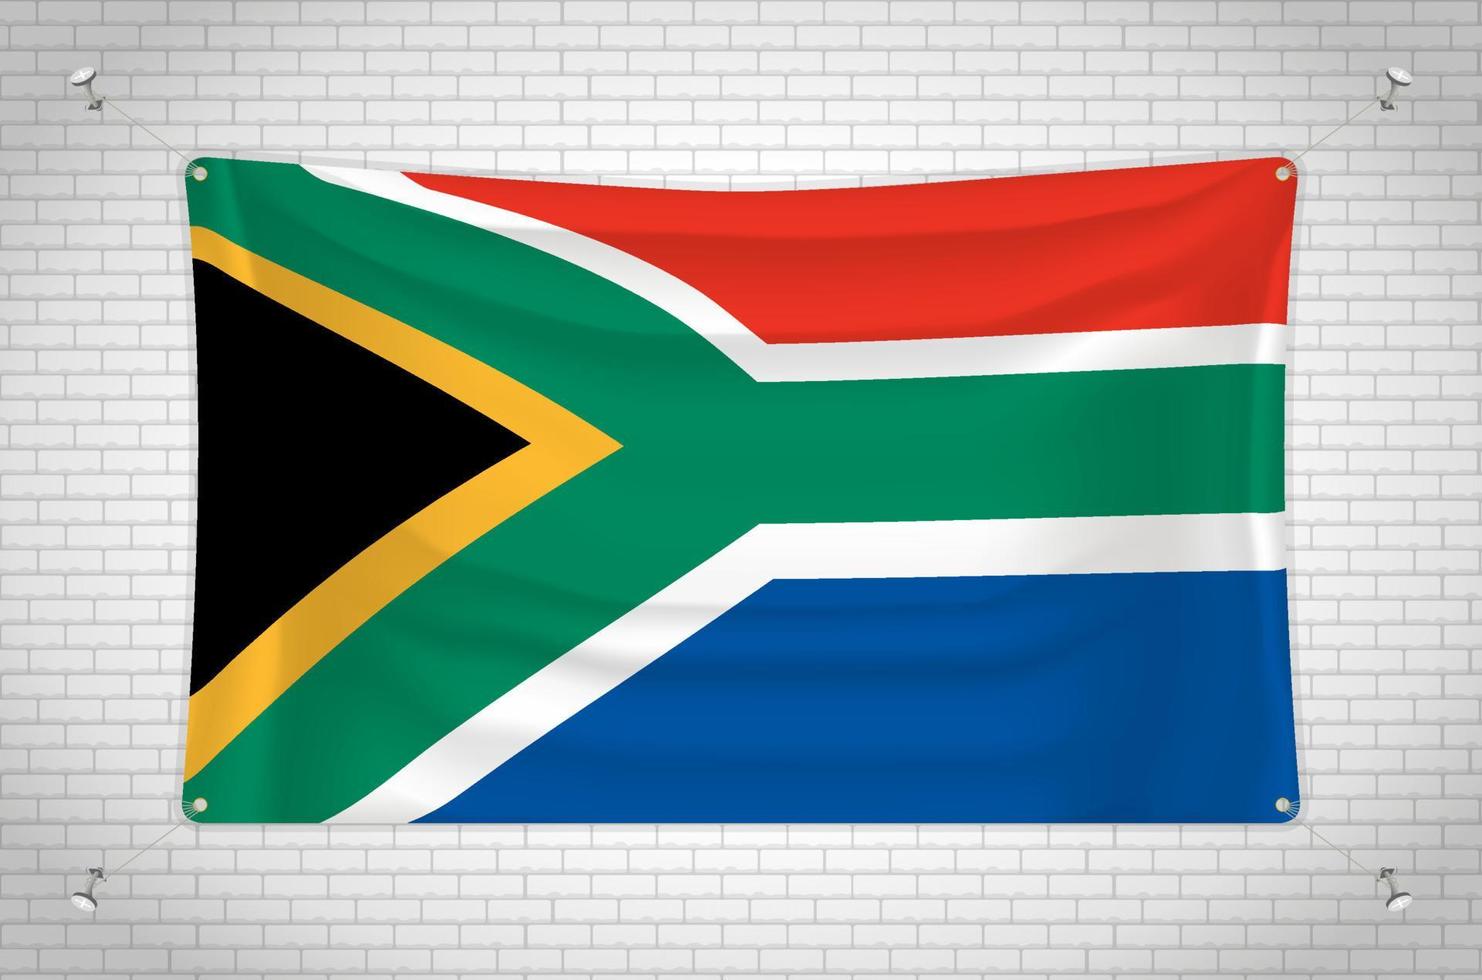 südafrika-flagge, die an der mauer hängt. 3D-Zeichnung. Flagge an der Wand befestigt. Ordentliches Zeichnen in Gruppen auf separaten Ebenen für eine einfache Bearbeitung. vektor